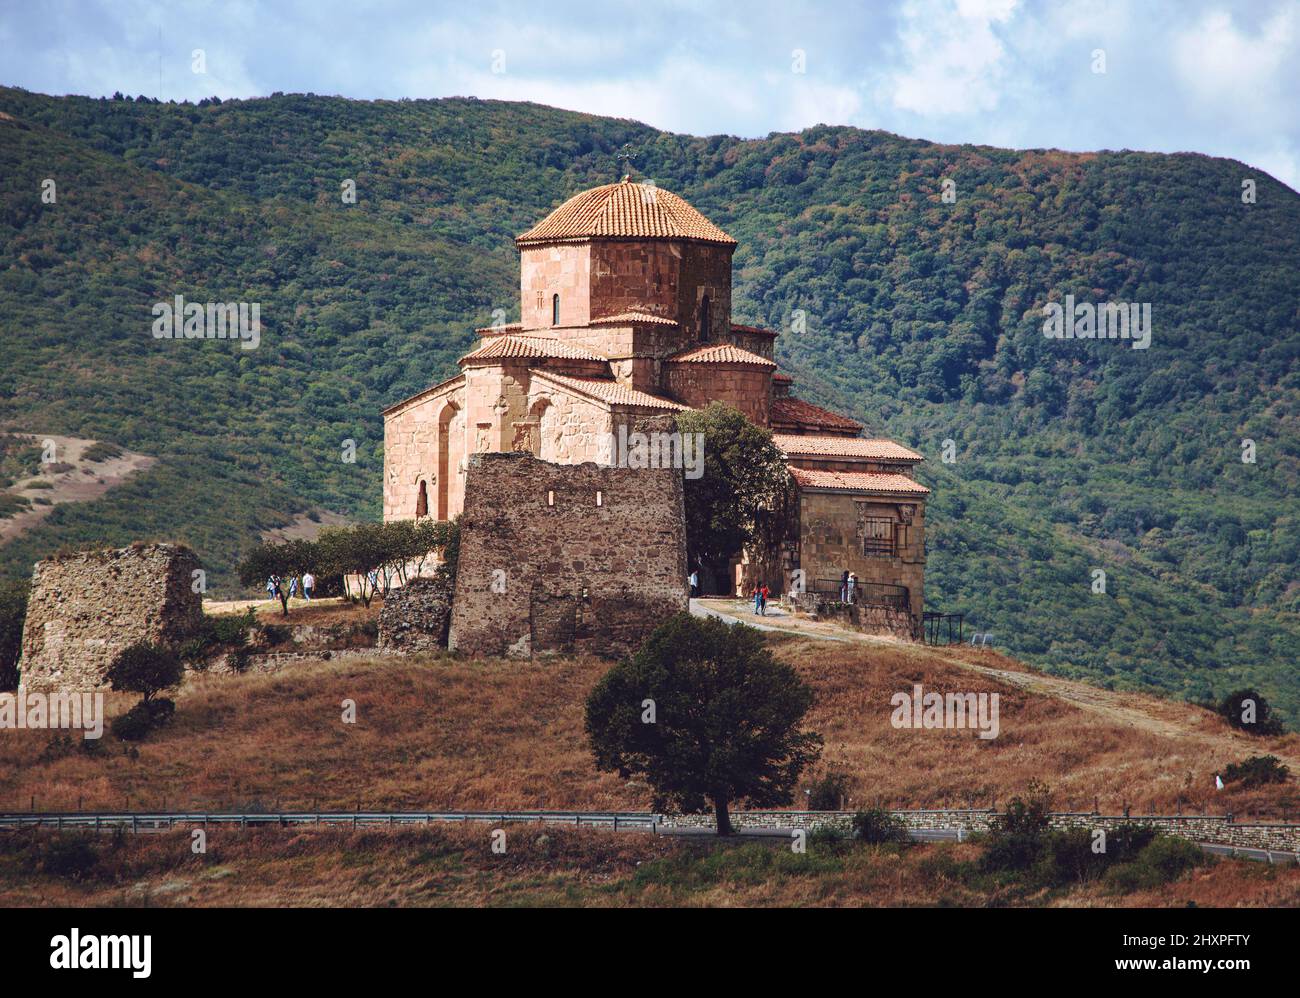 Ancien monastère orthodoxe géorgien Jvari, situé près de Mtskheta, Géorgie. Photo de jour d'été Banque D'Images